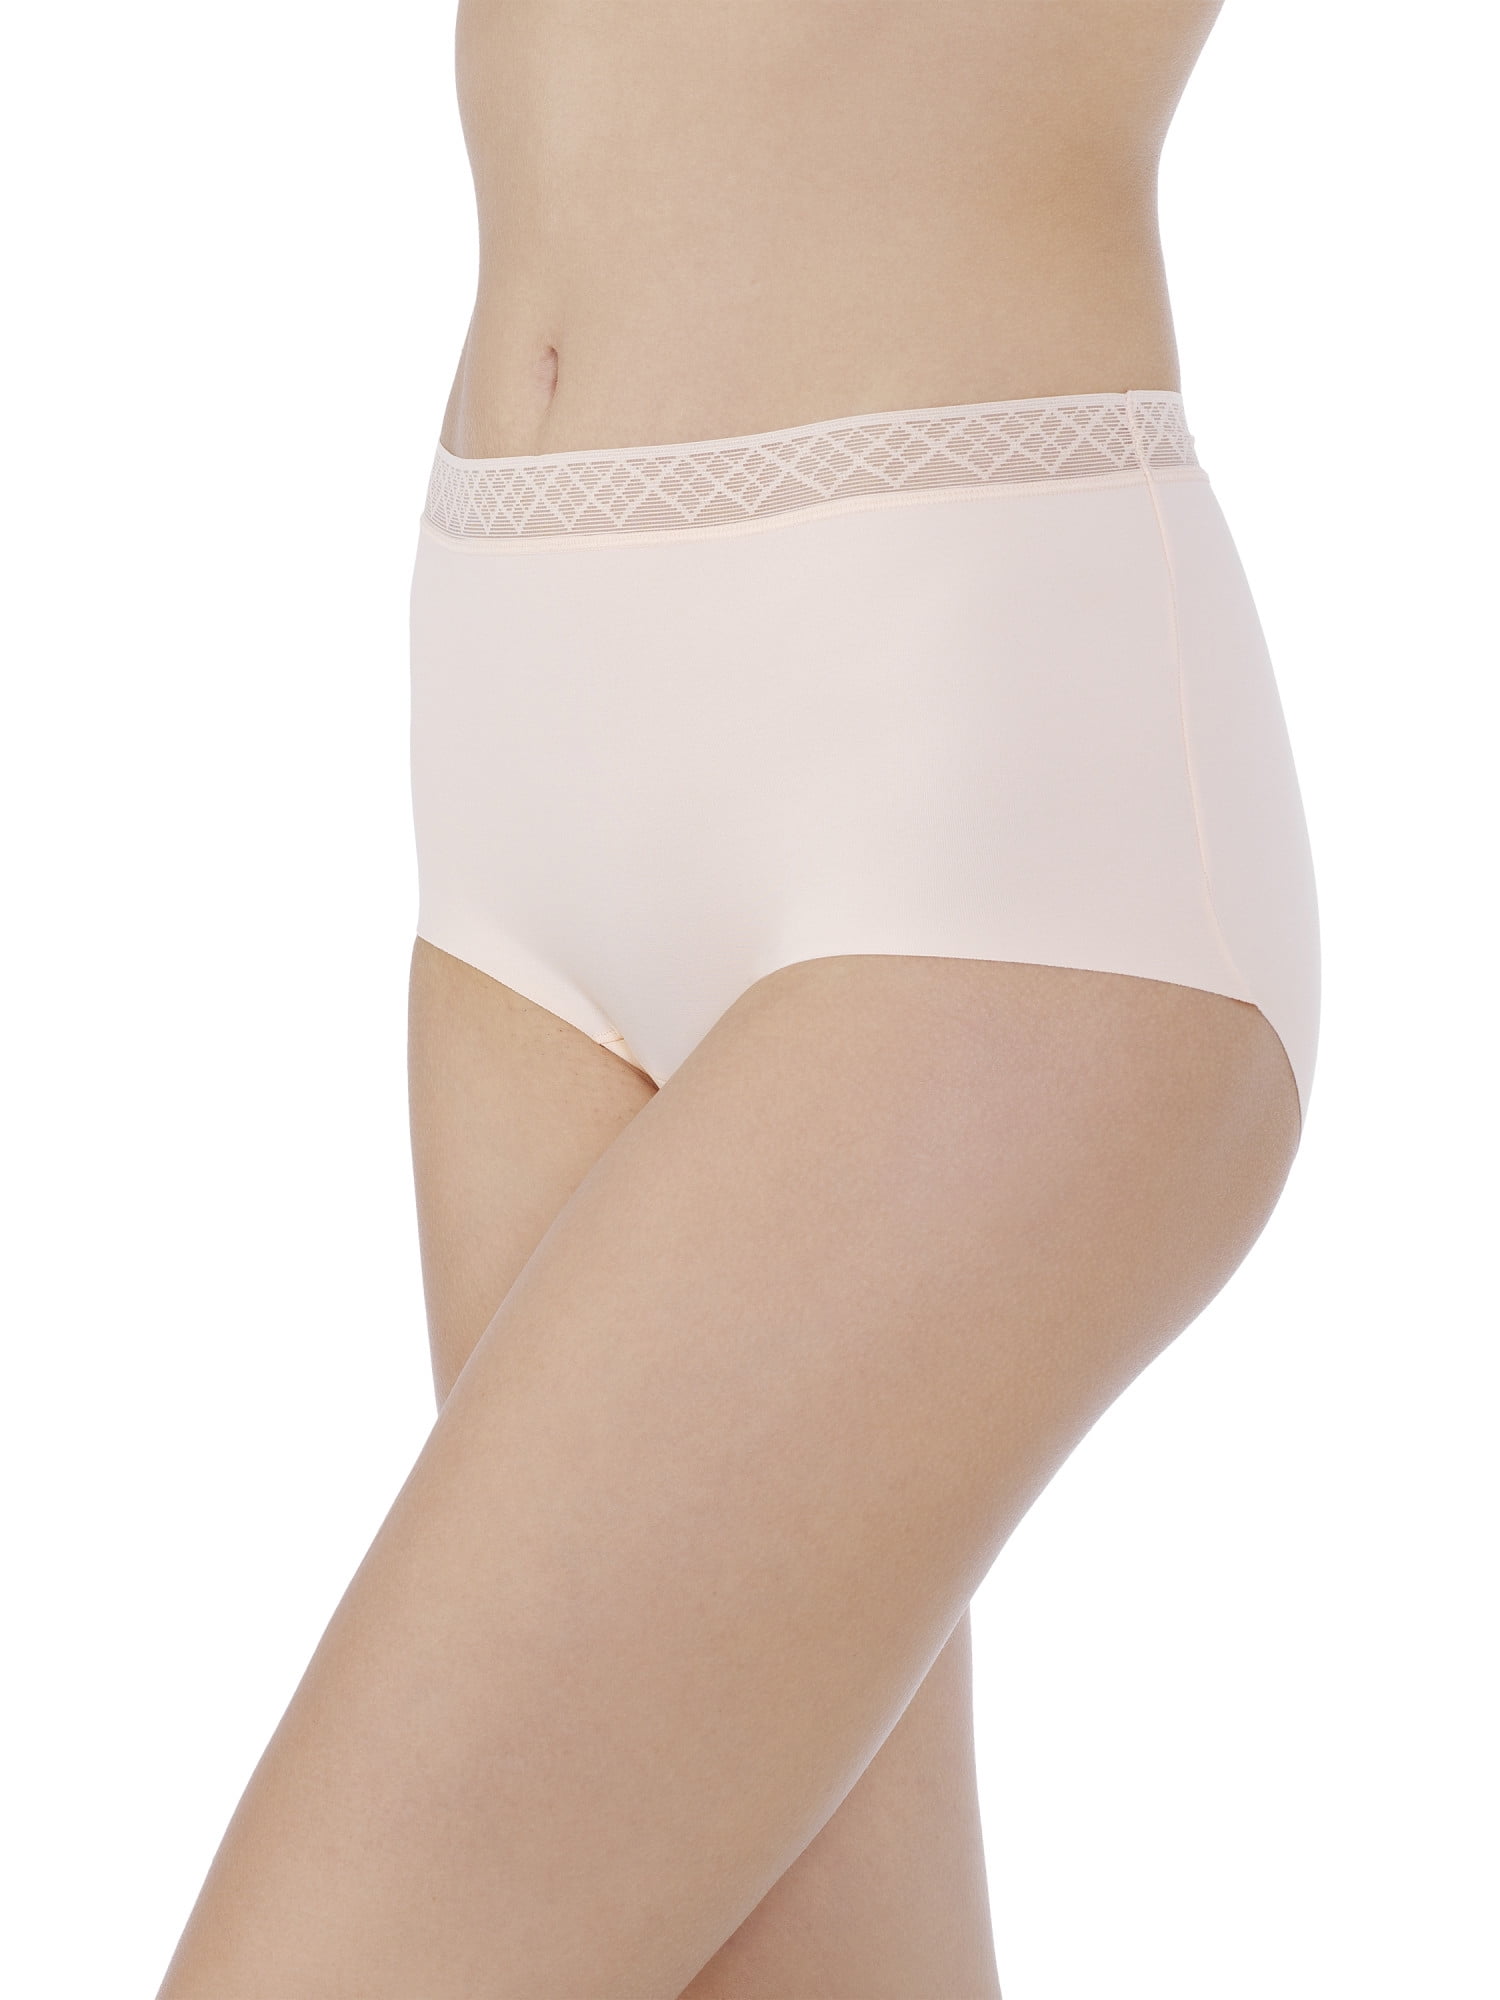 Women's Micro Brief Underwear DK8305